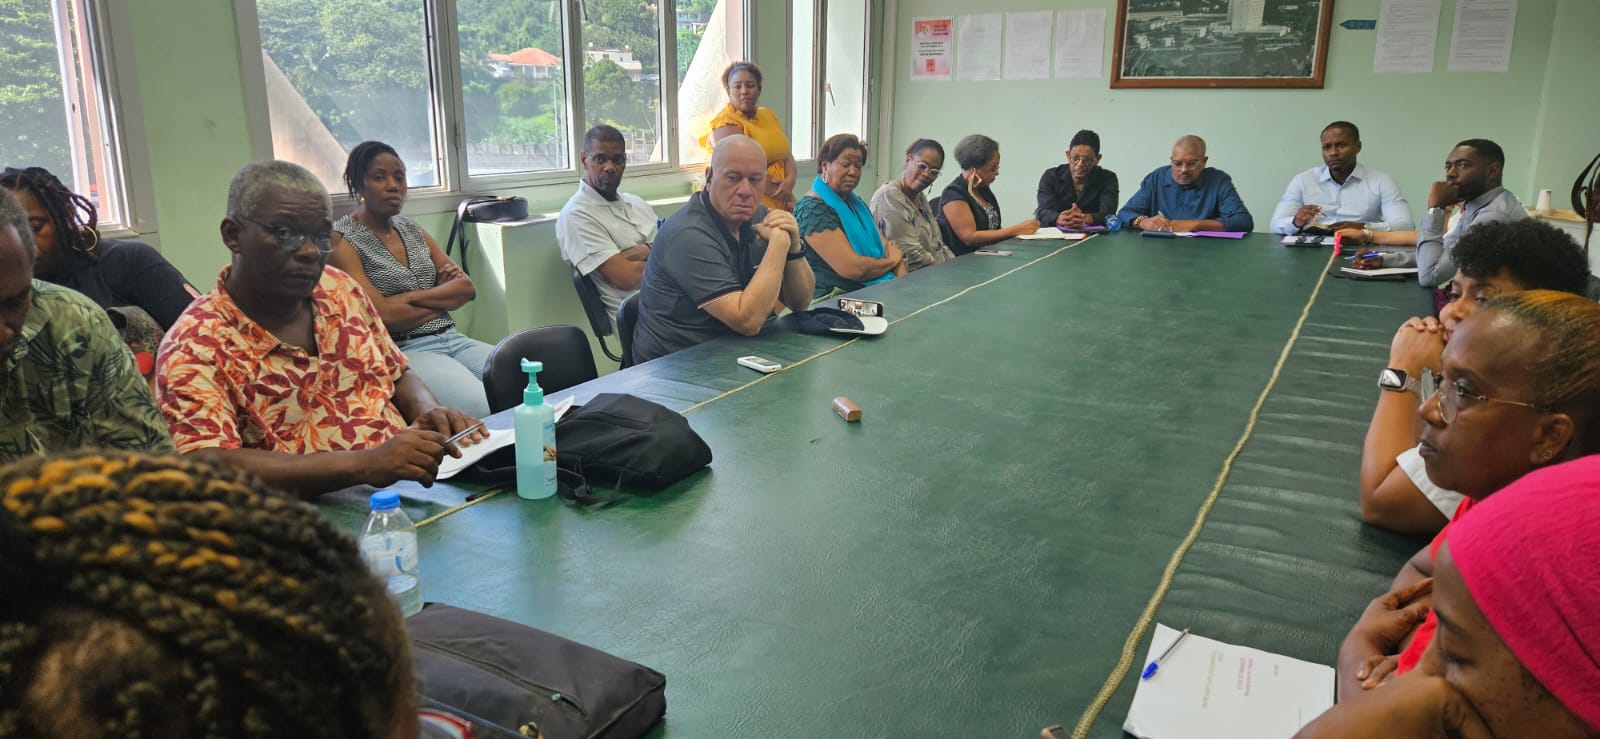     Hôpital de Trinité : trois députés rencontrent la direction et les salariés

